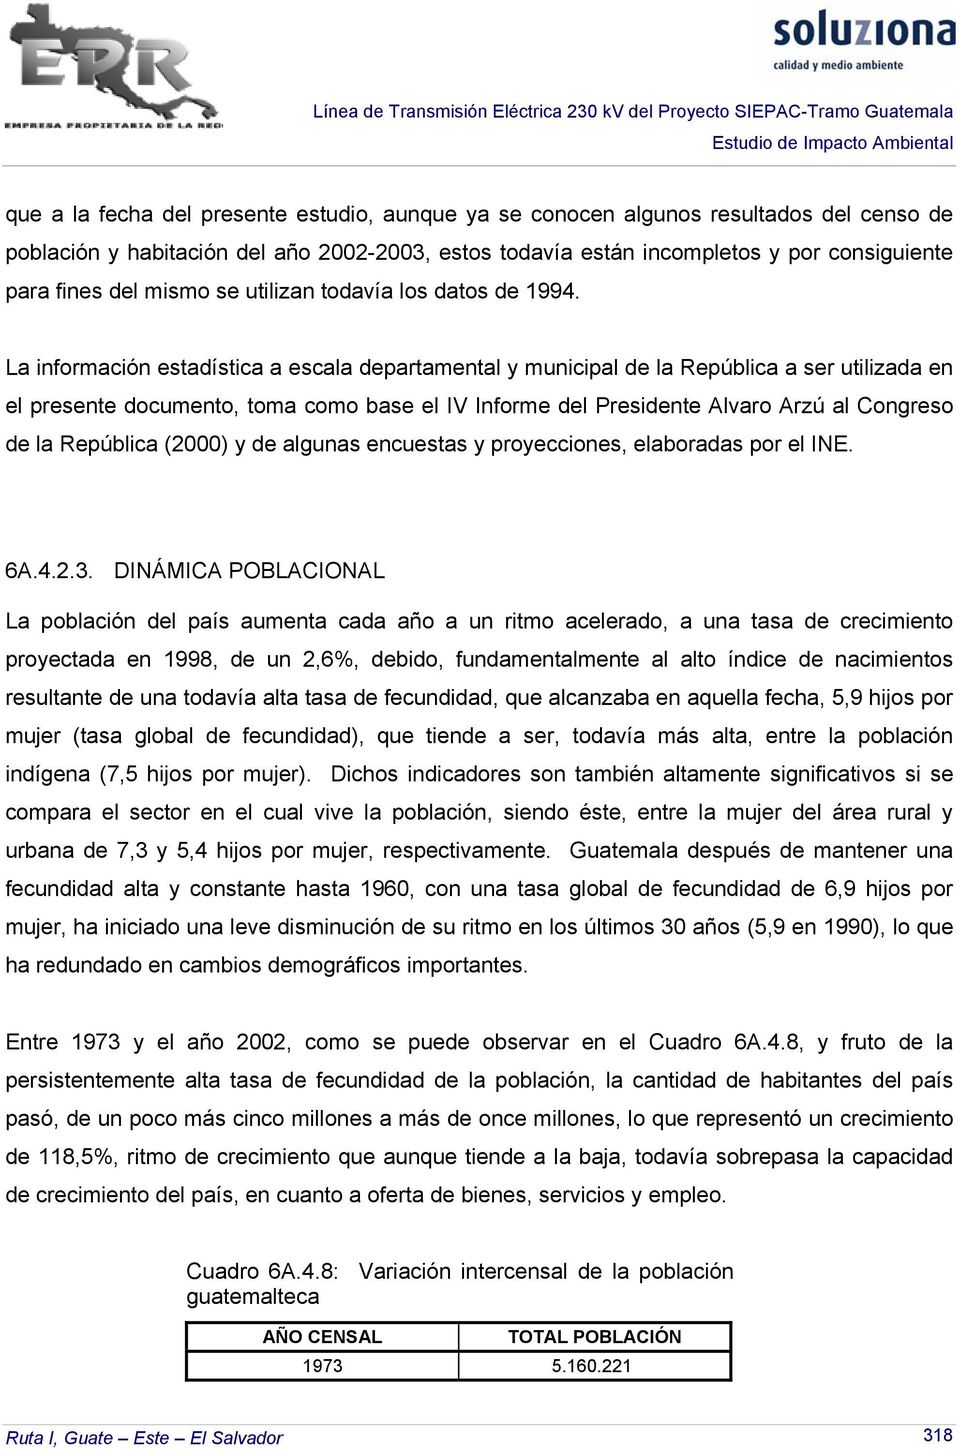 La información estadística a escala departamental y municipal de la República a ser utilizada en el presente documento, toma como base el IV Informe del Presidente Alvaro Arzú al Congreso de la